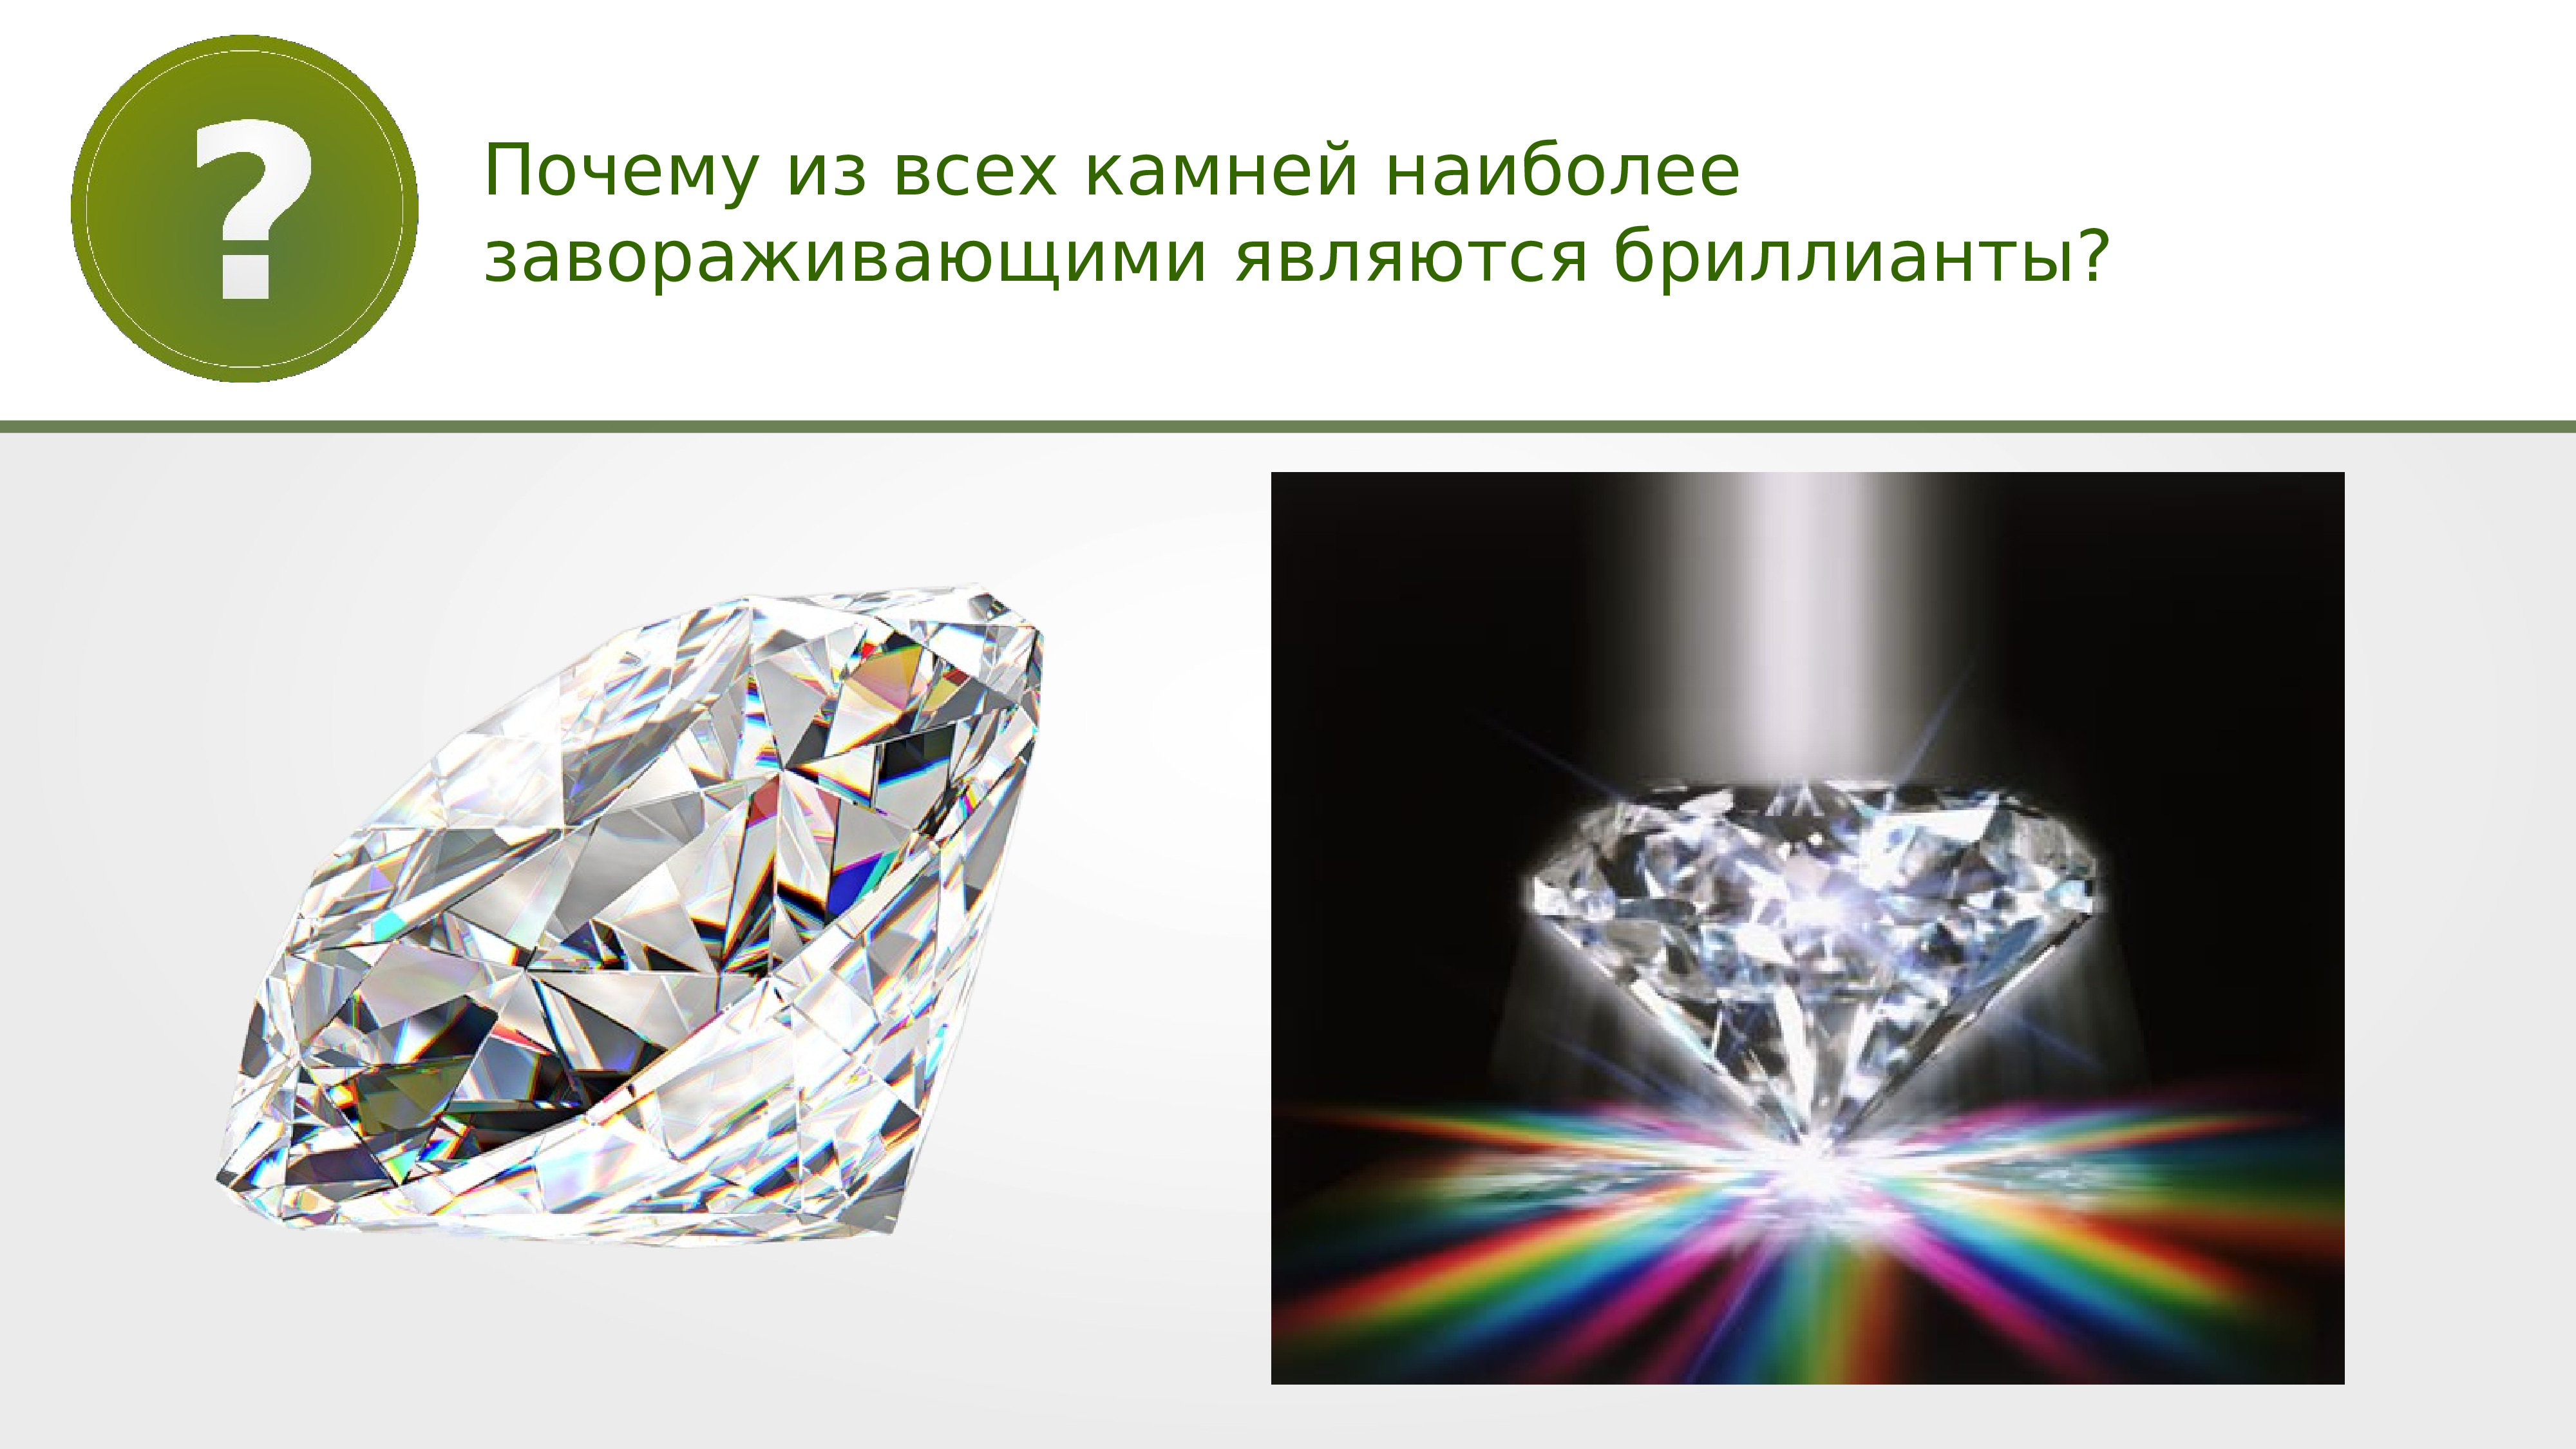 Презентация цвета тел 9 класс. Дисперсия алмаза. Дисперсия бриллианта. Дисперсия драгоценных камней. Дисперсия света в Бриллианте.